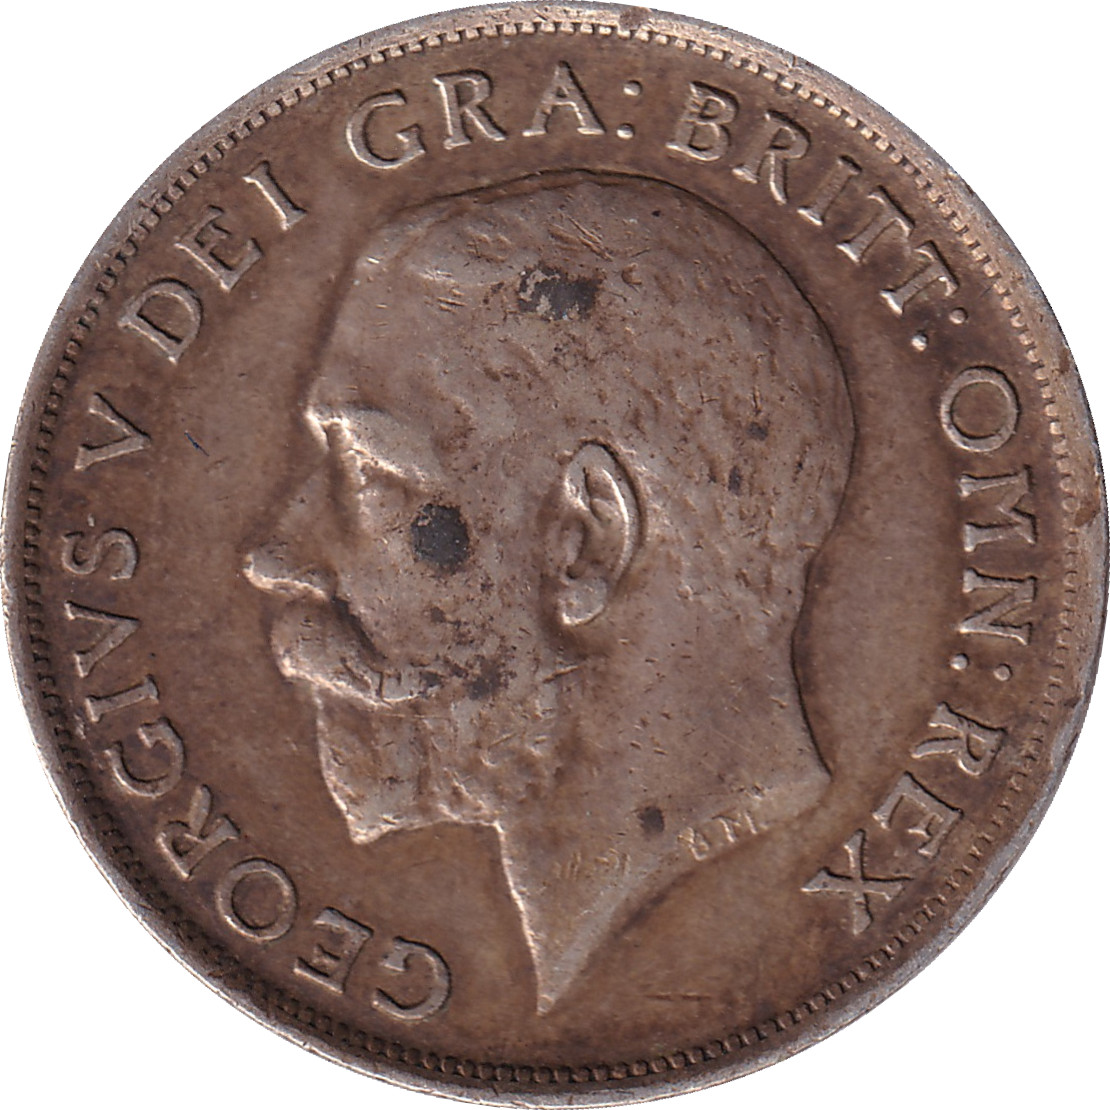 1 shilling - Georges V - Lion et couronne